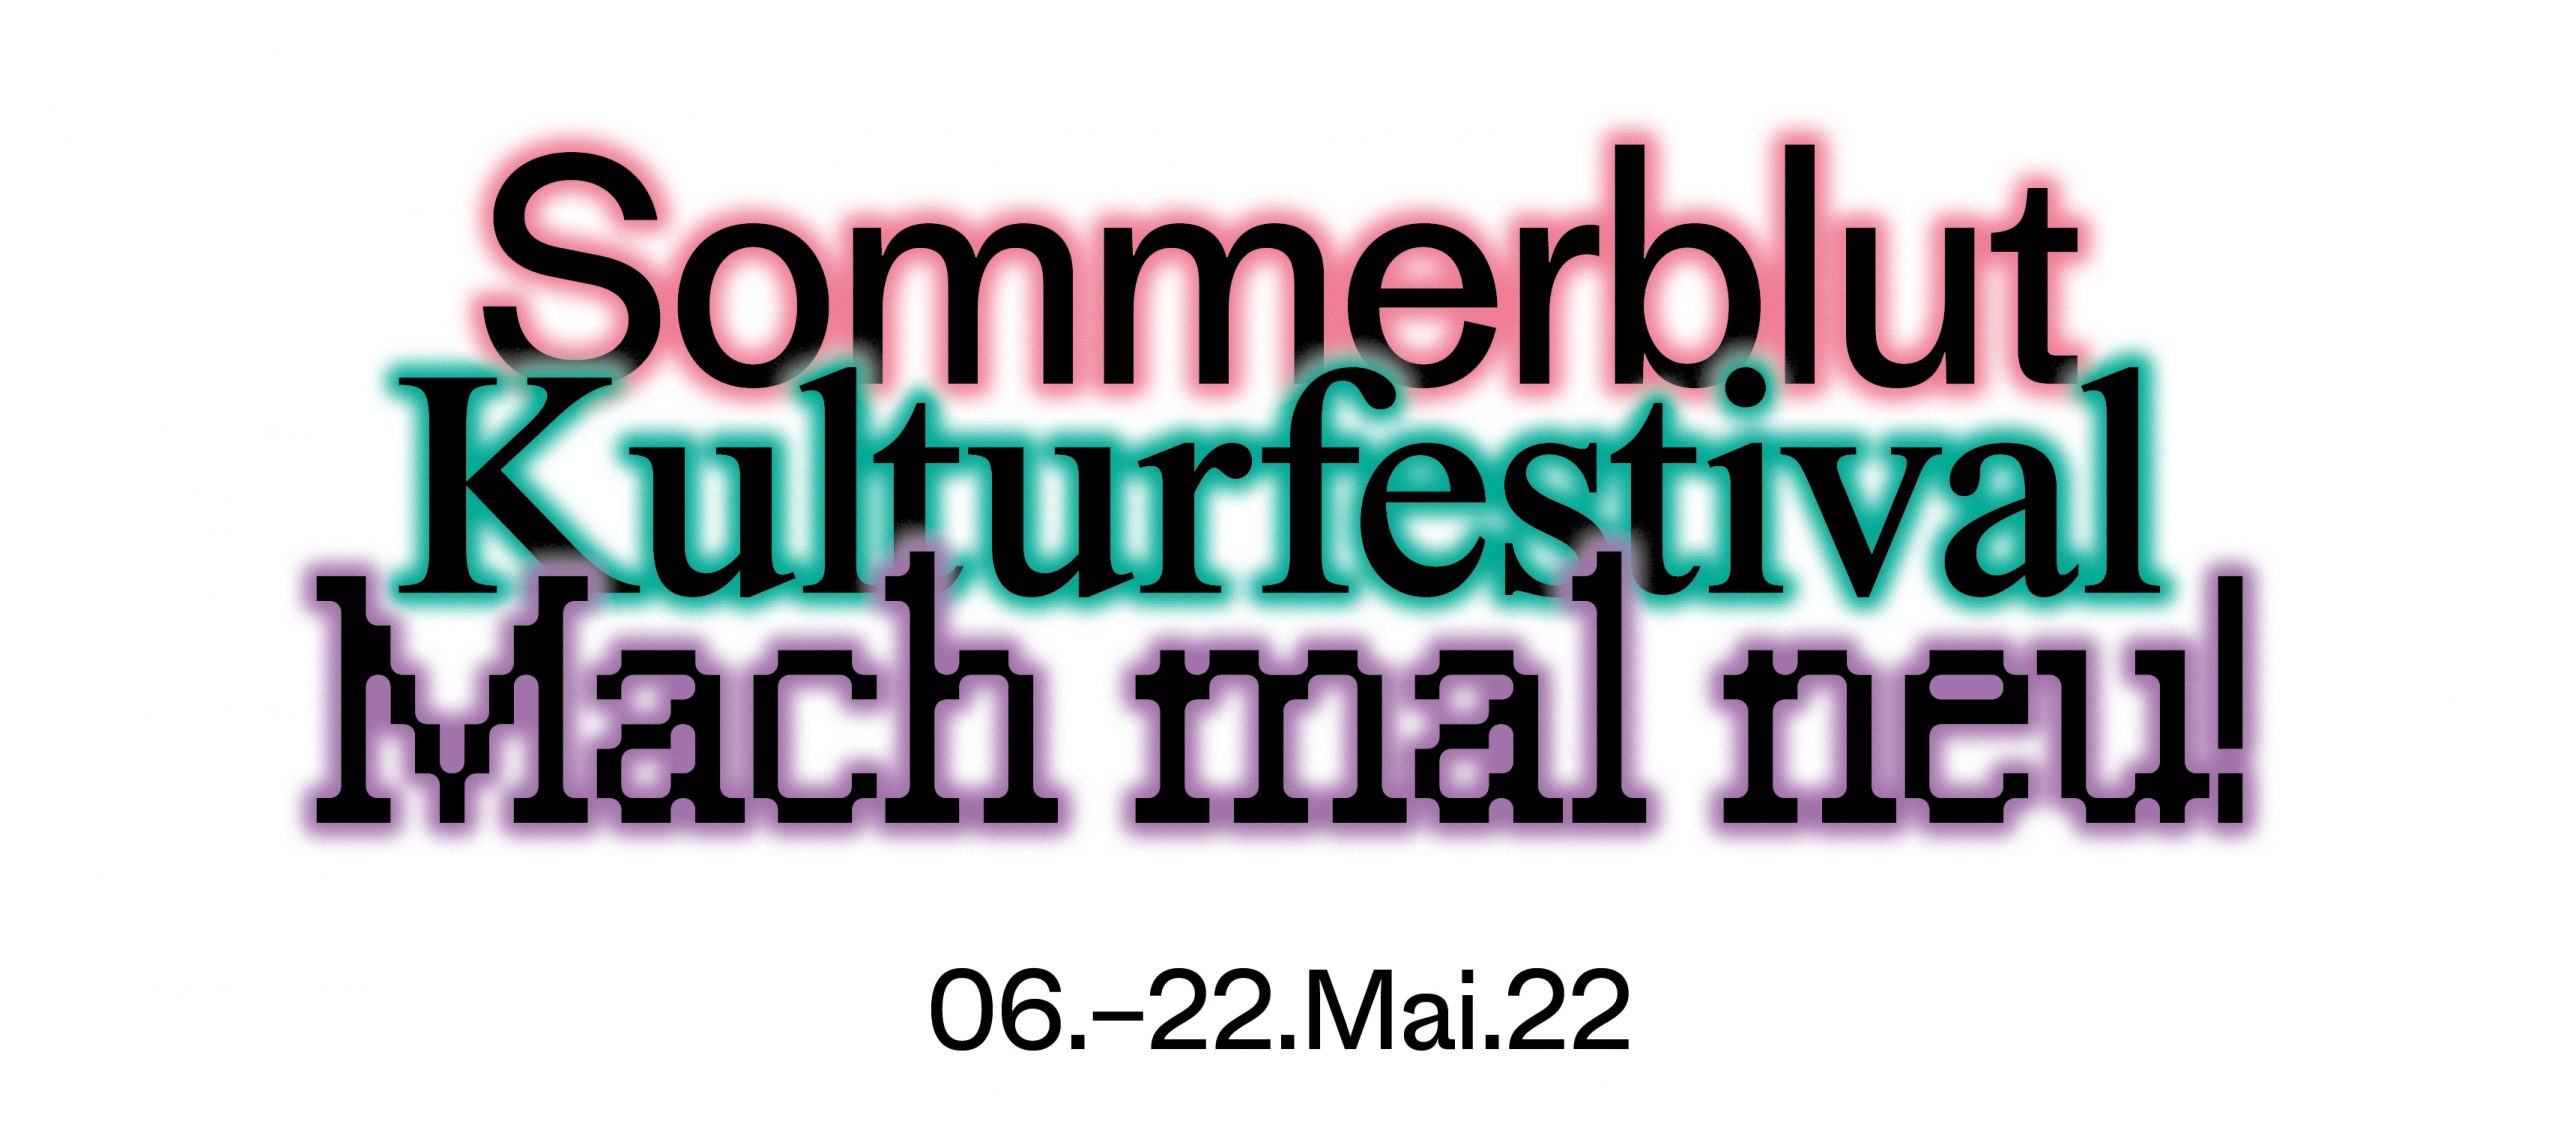 KULTURFINALE Sommerblut Festival